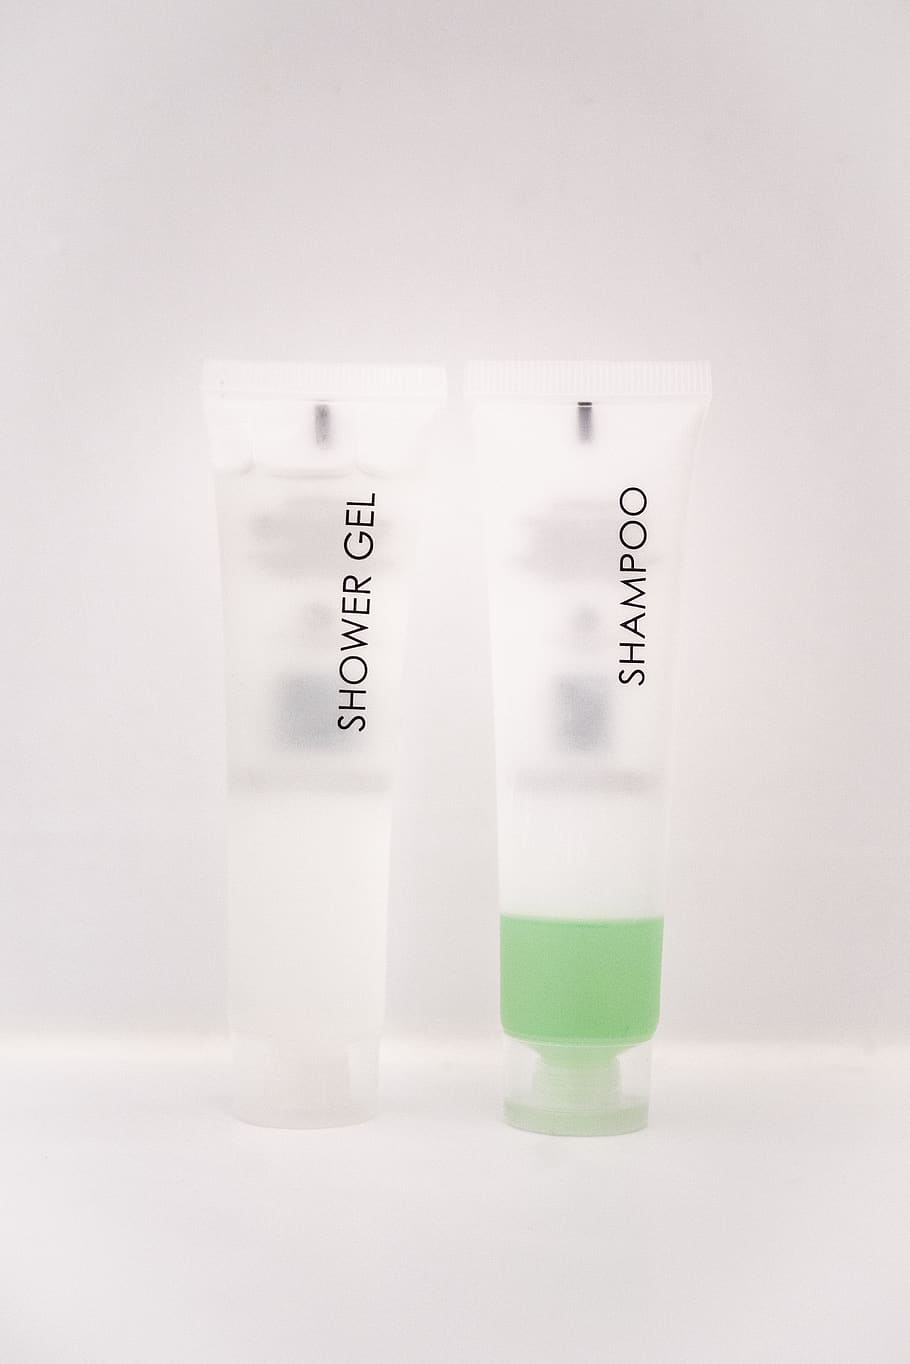 shower gel and shampoo soft-tube bottles on white surface, studio shot, HD wallpaper